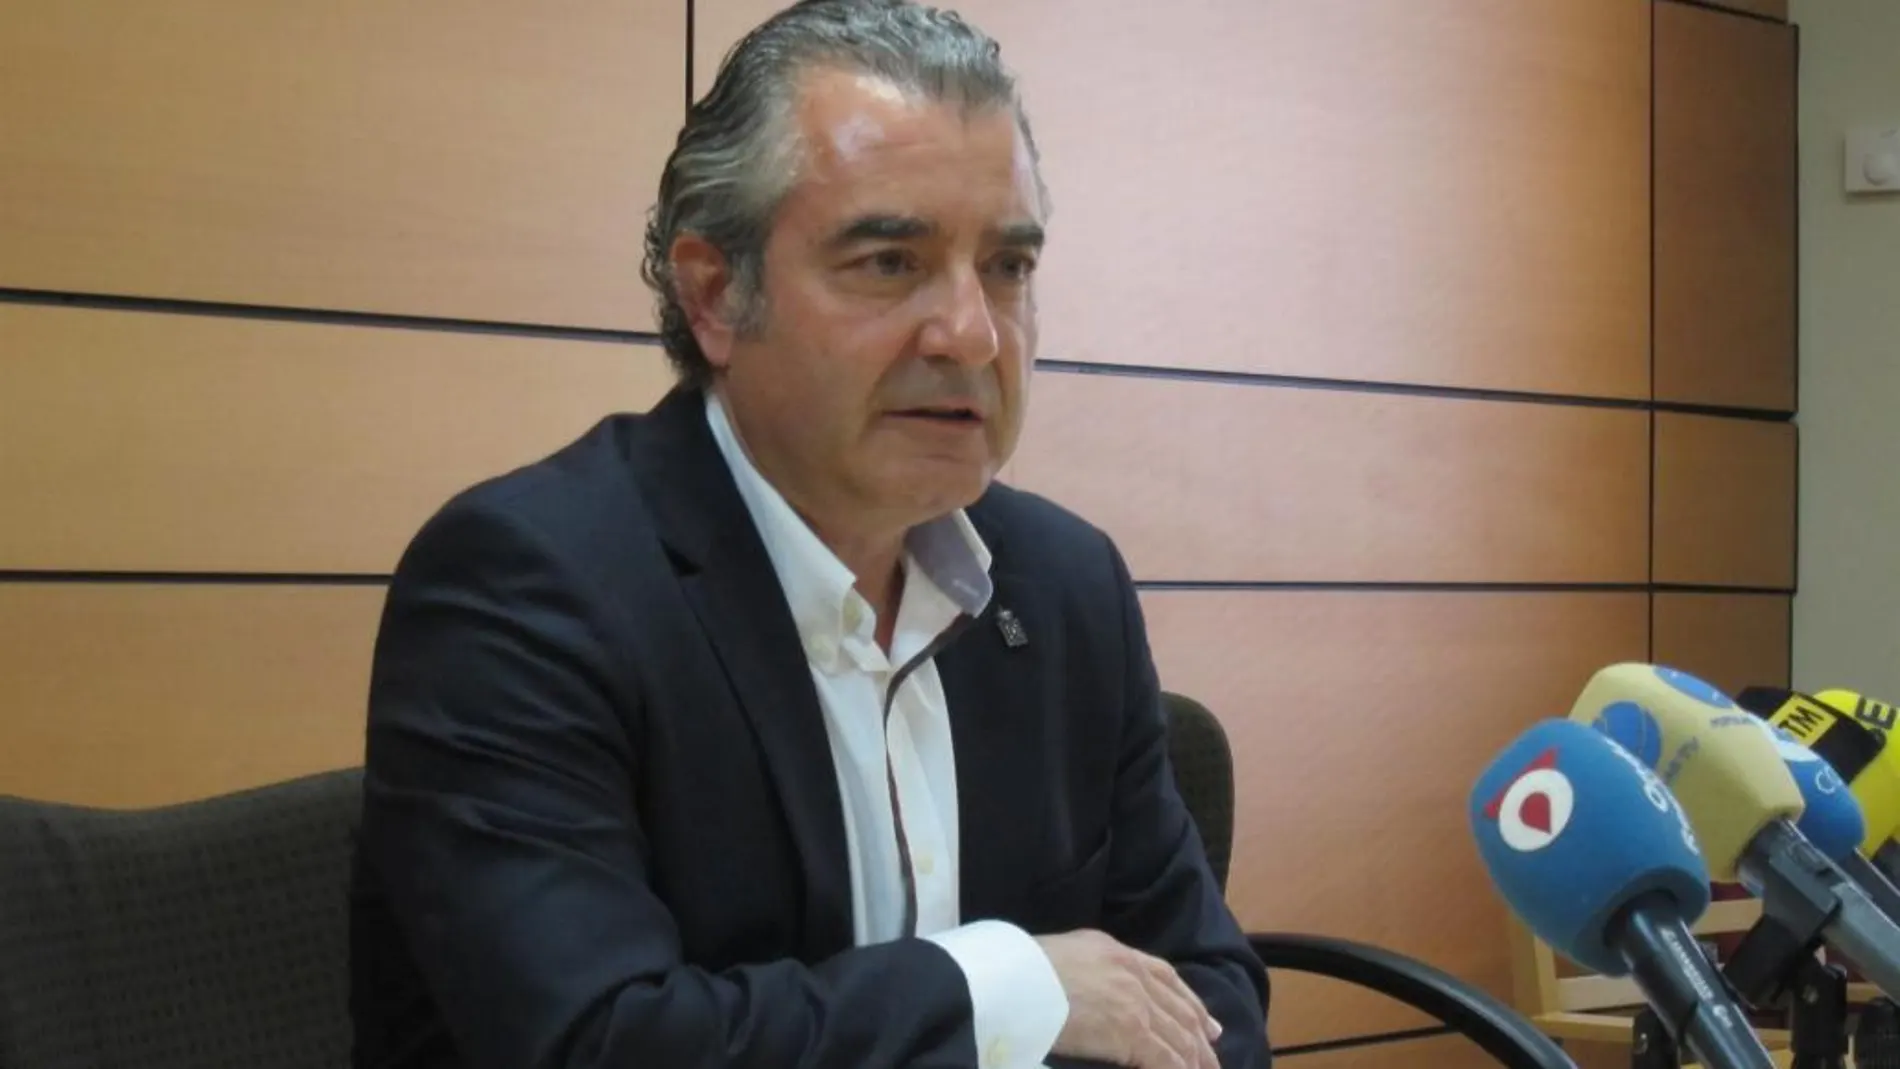 El concejal de Ciudadanos en Murcia, Javier Trigueros, pasará al grupo mixto por «discrepancias» con la formación